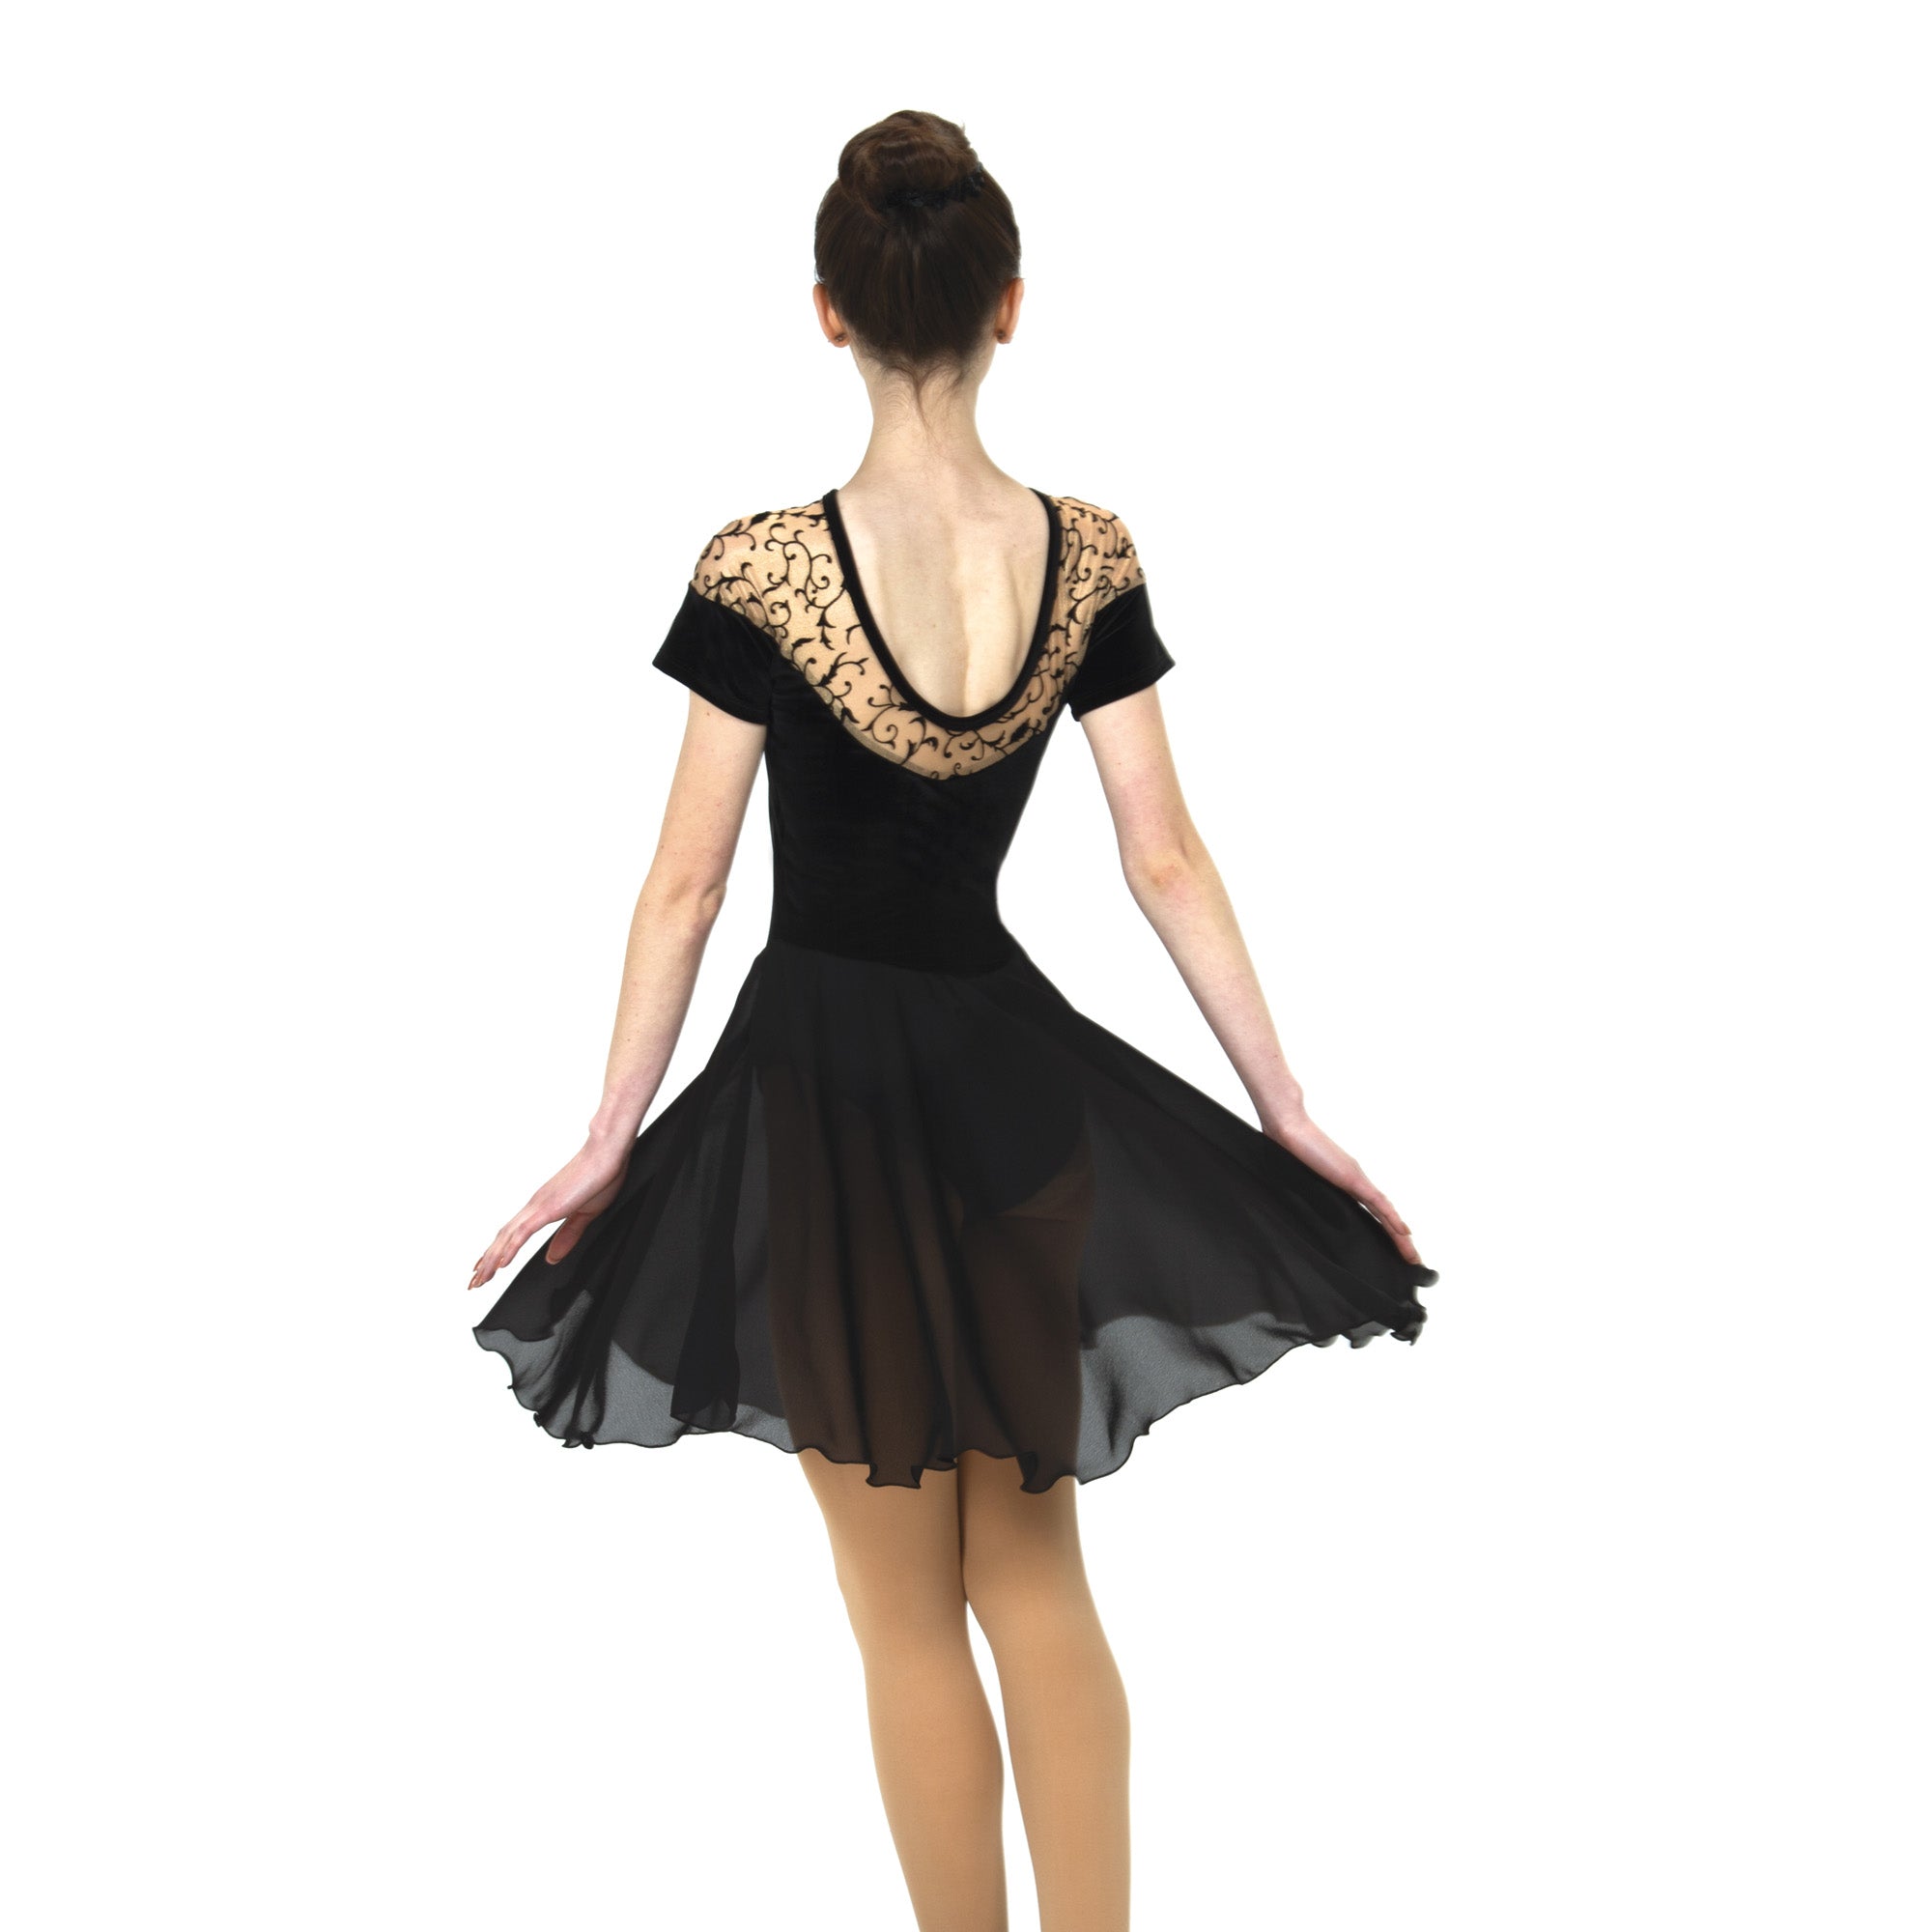 96 Swirling Shoulders Dance Dress in Black by Jerry's